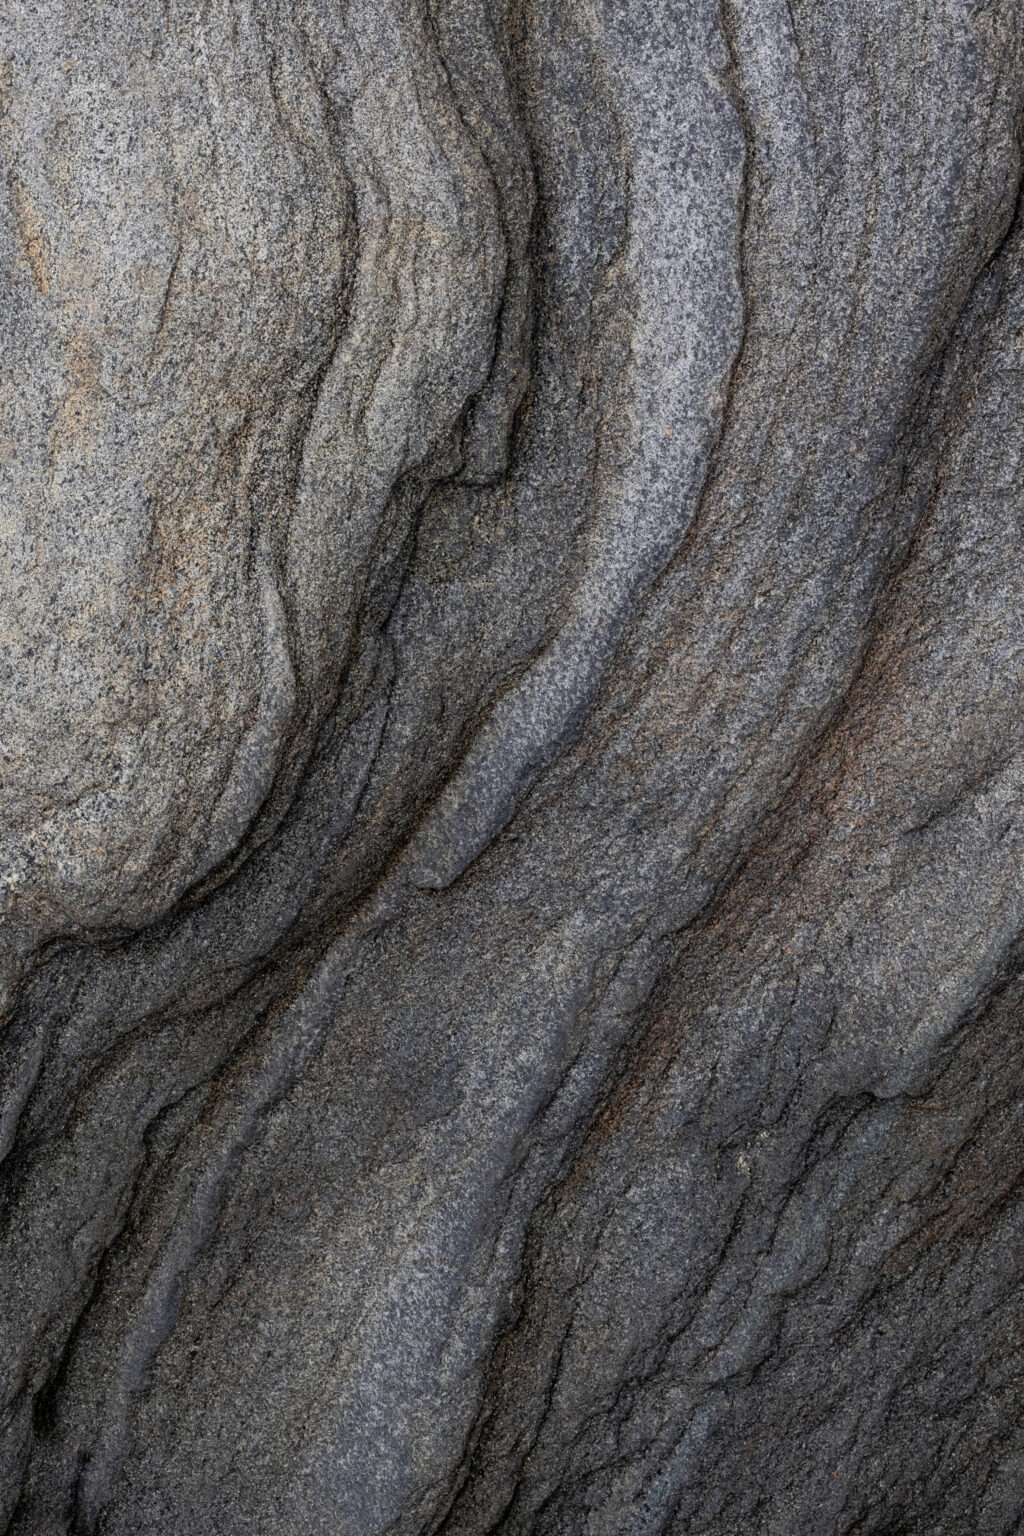 Wavy Rock Texture Wallpaper